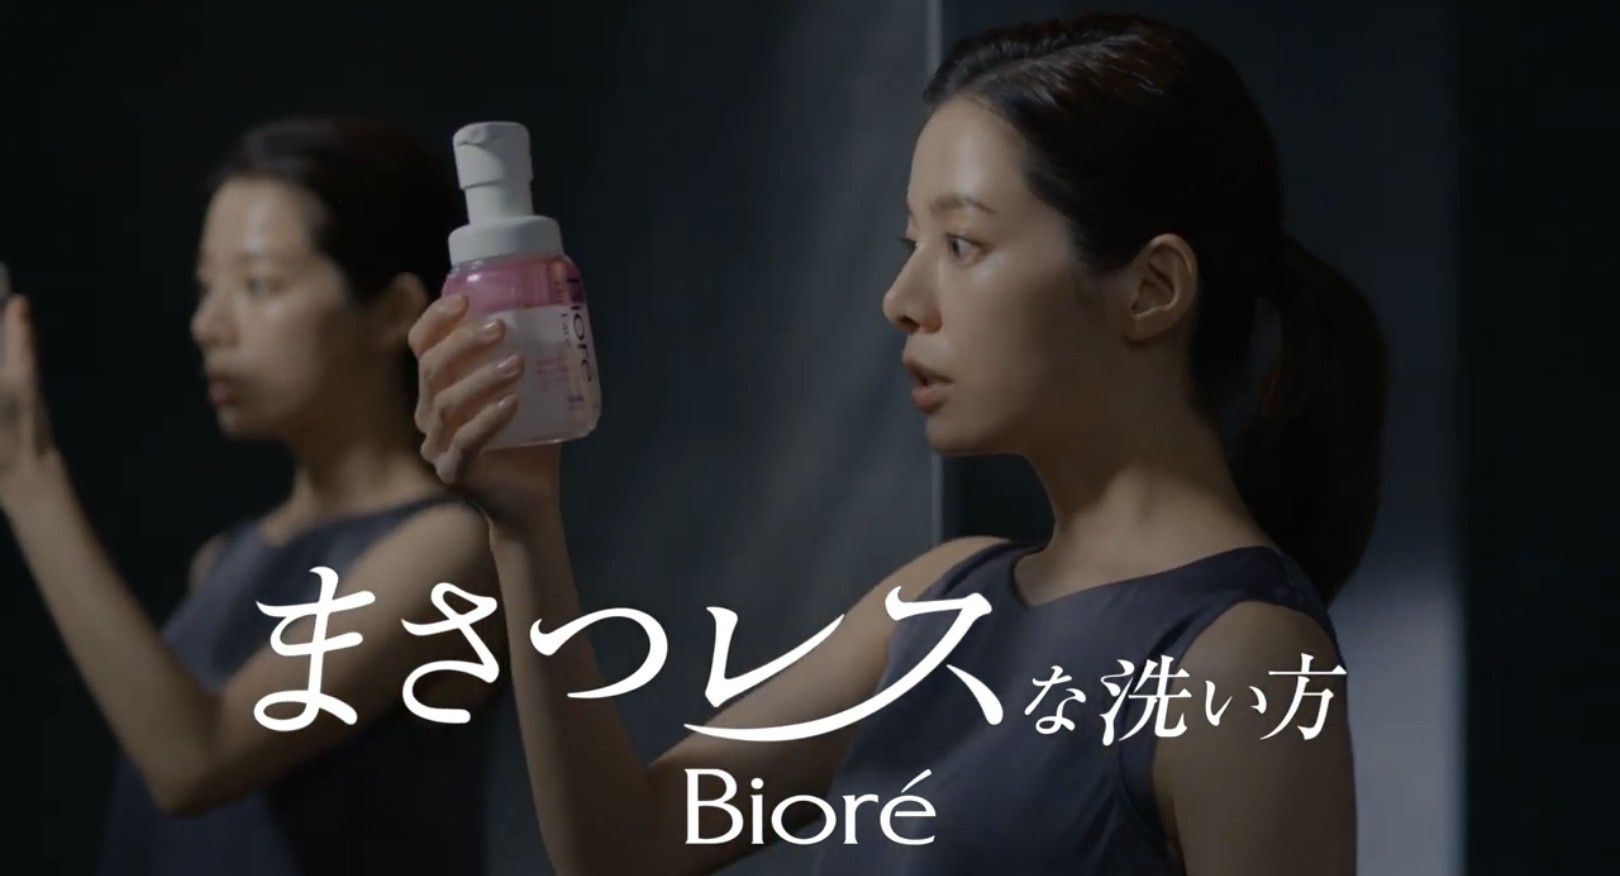 新商品 ビオレザフェイスcmが公開中 桜井ユキが生クリーム泡で まさつレス洗顔